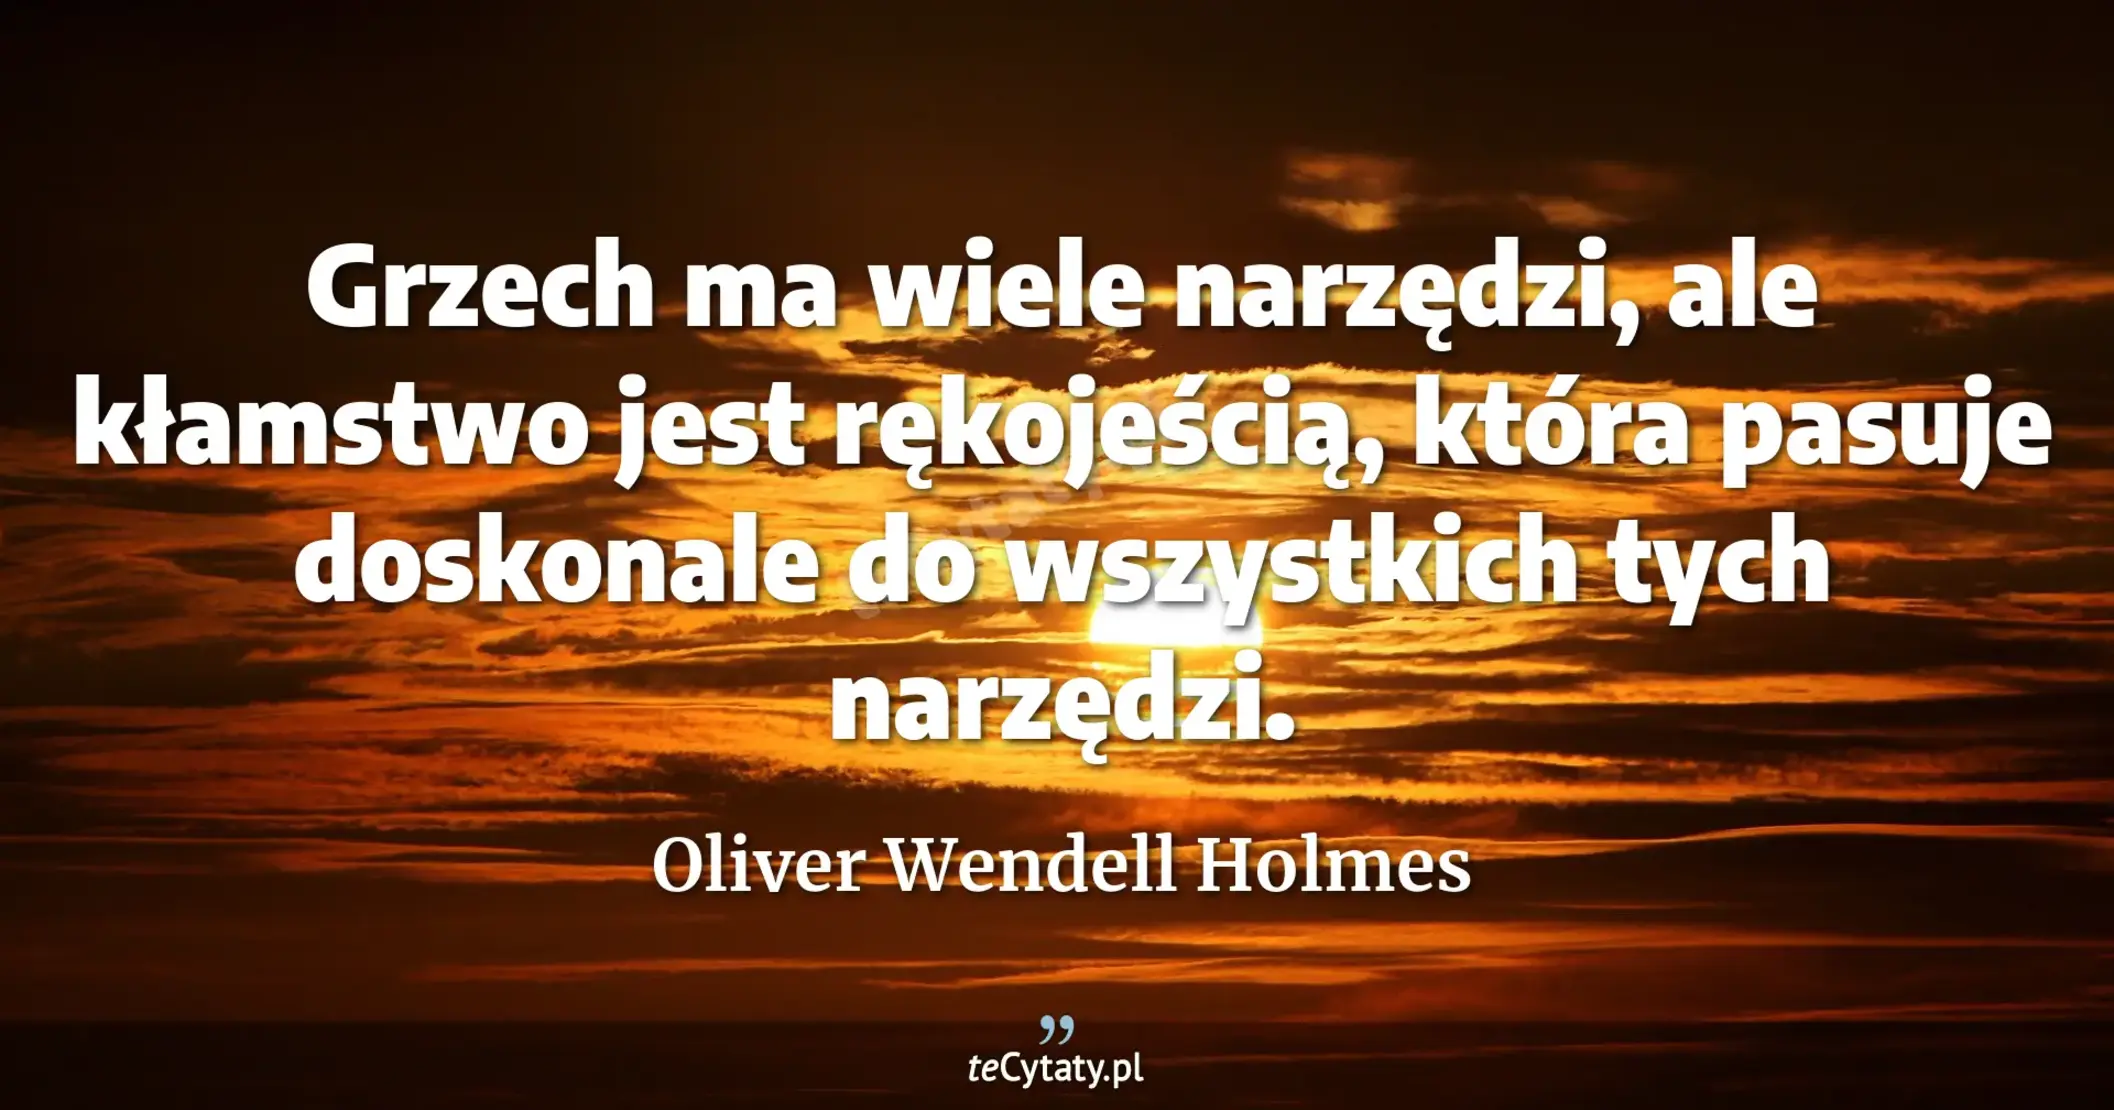 Grzech ma wiele narzędzi, ale kłamstwo jest rękojeścią, która pasuje doskonale do wszystkich tych narzędzi. - Oliver Wendell Holmes